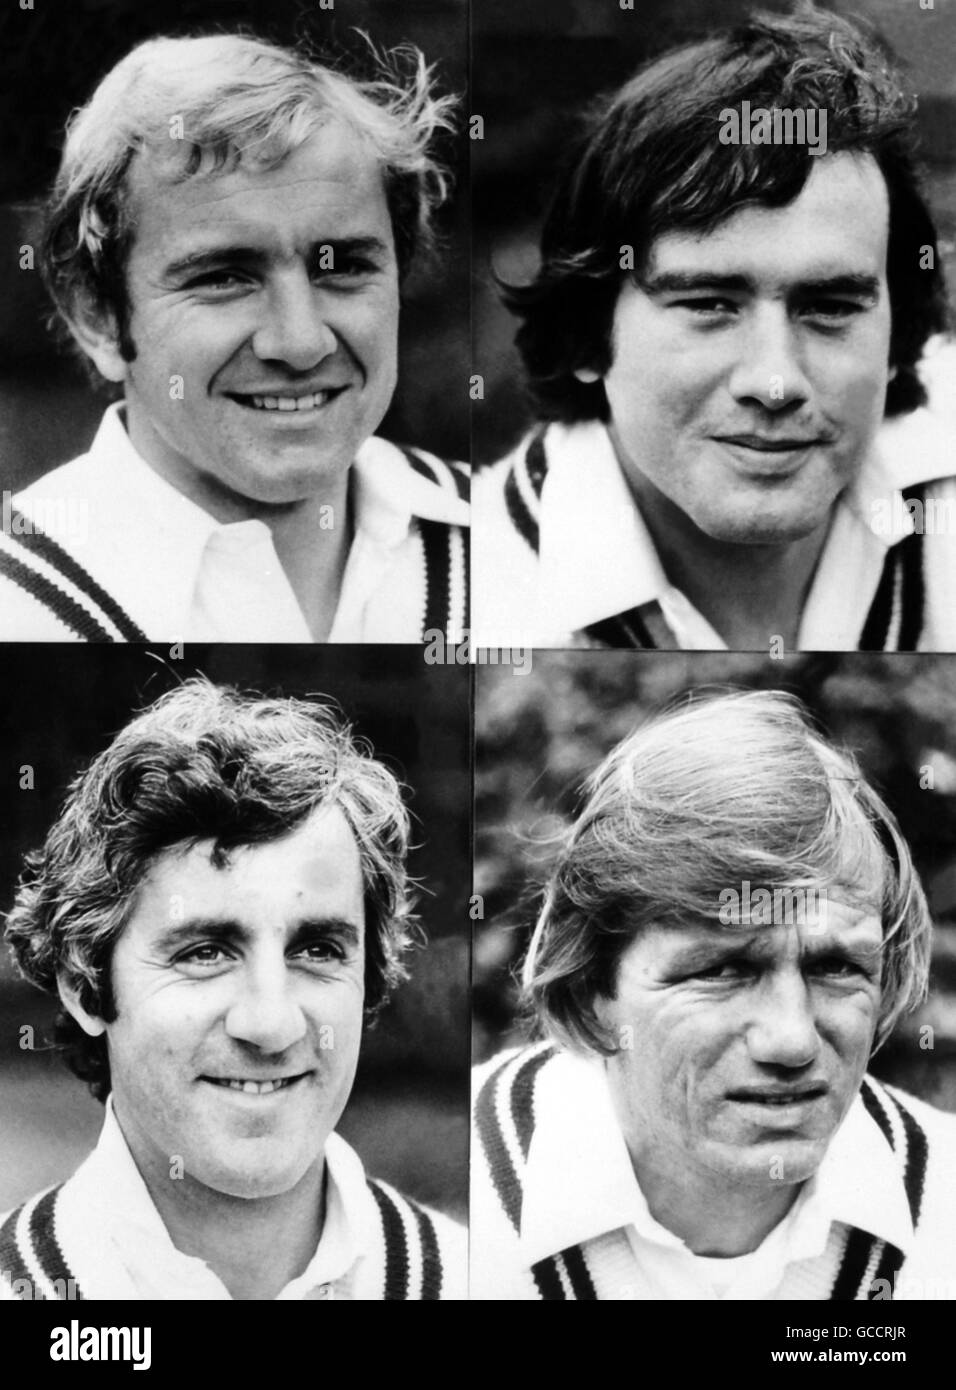 Membres de l'équipe de cricket du comté de Middlesex (en haut à gauche et à droite) Graham Barlow et Tim Lamb, (en bas à gauche et à droite) Mike Brearley et Clive Radley Banque D'Images